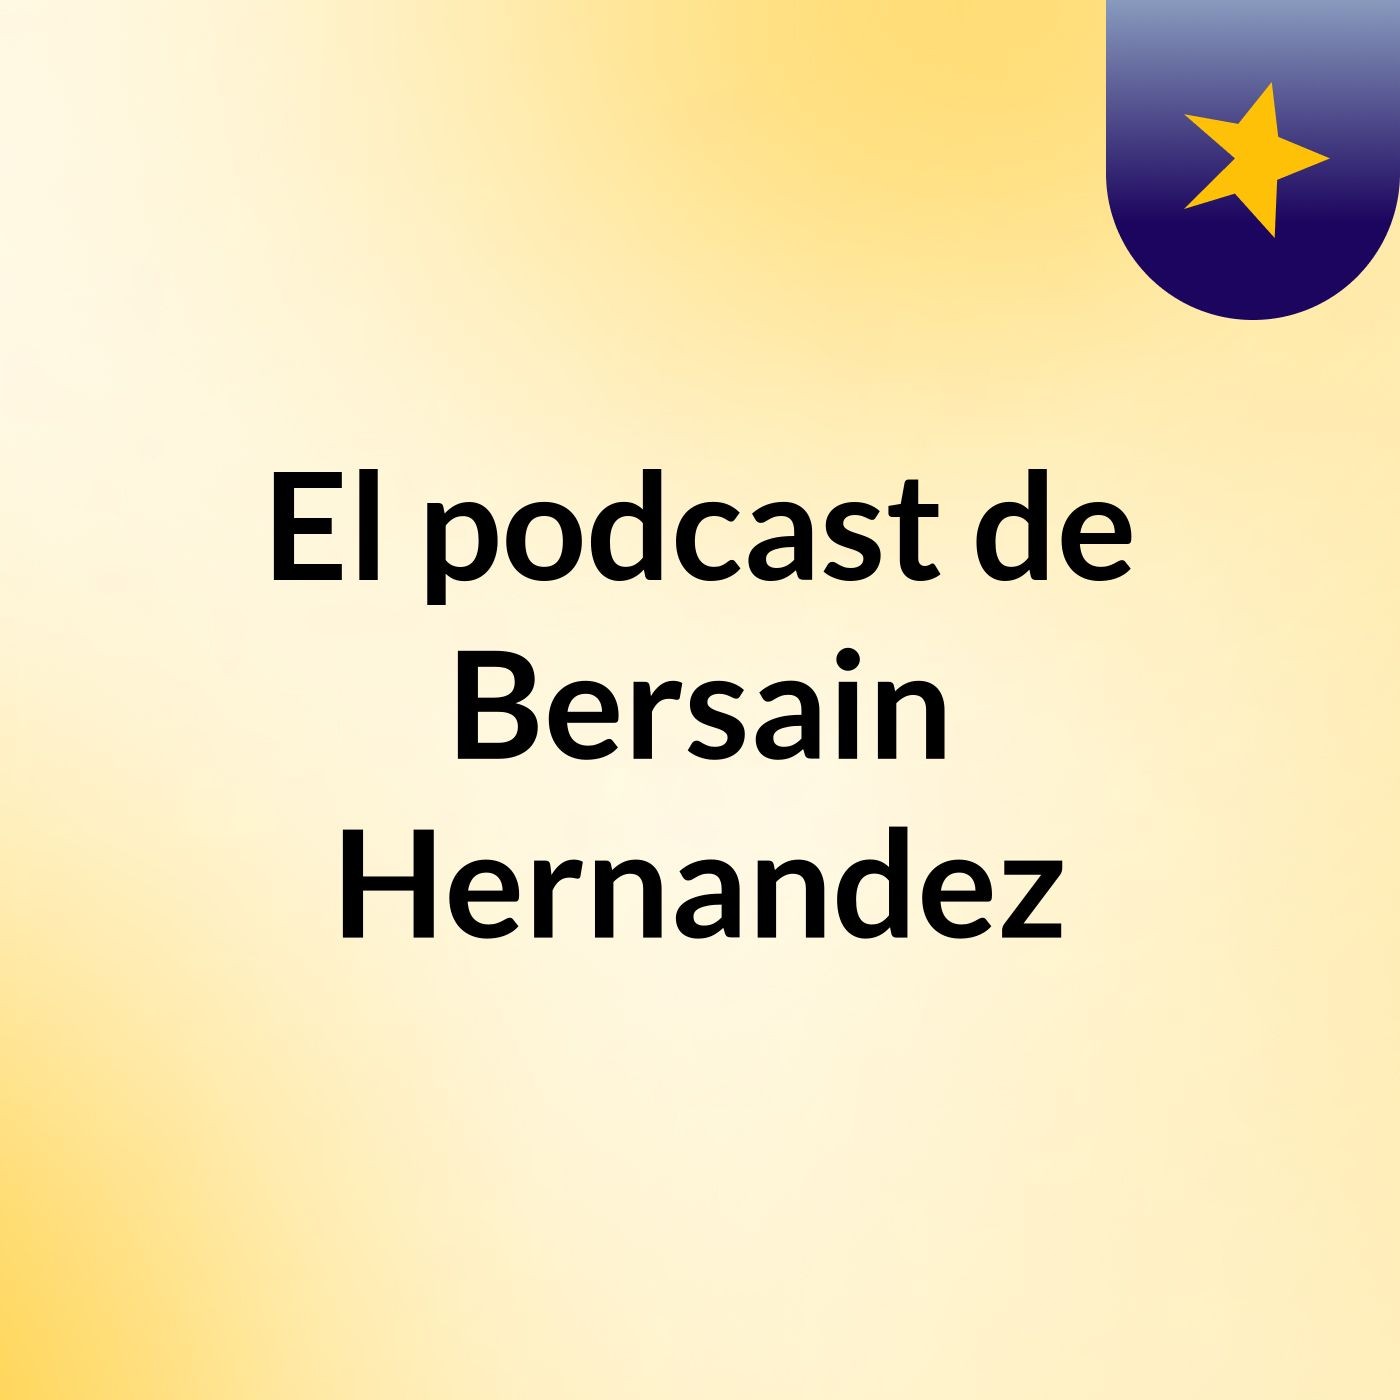 El podcast de Bersain Hernandez